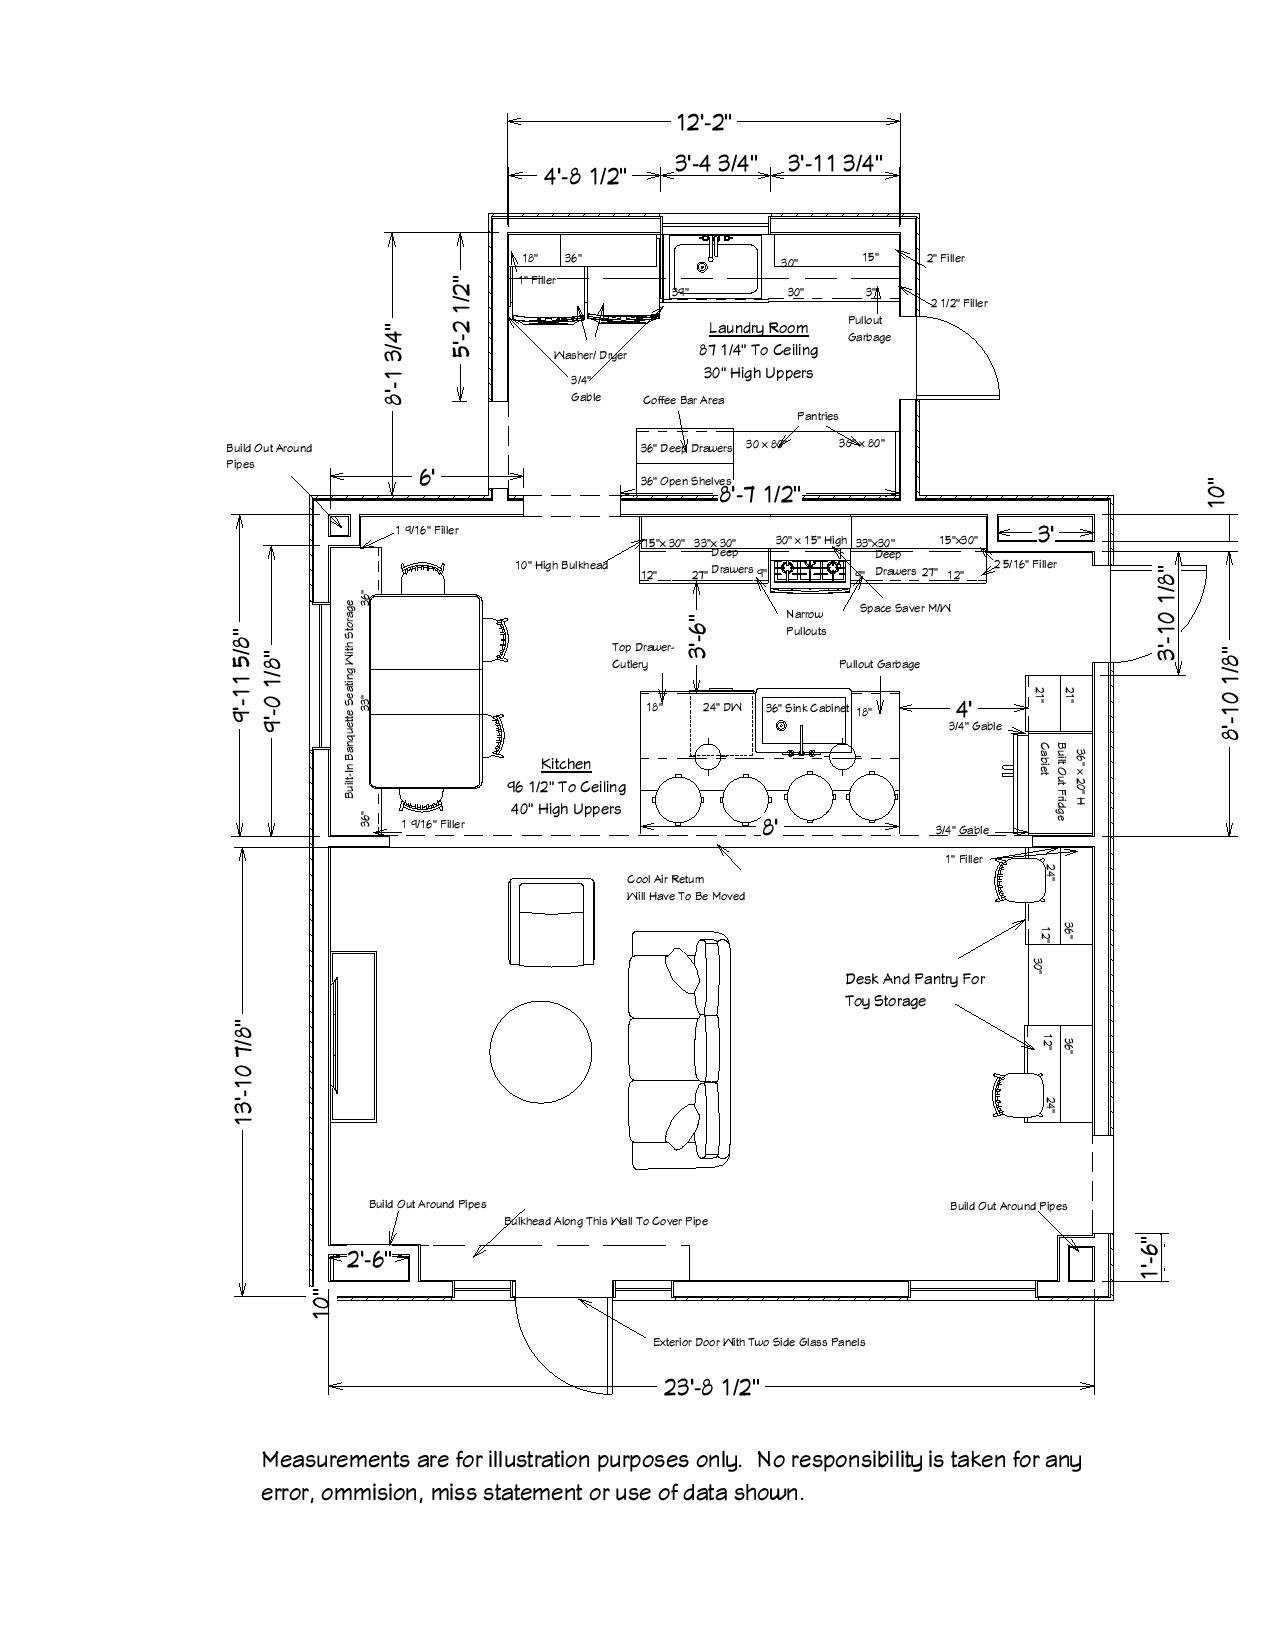 white and blue kitchen design floor plan